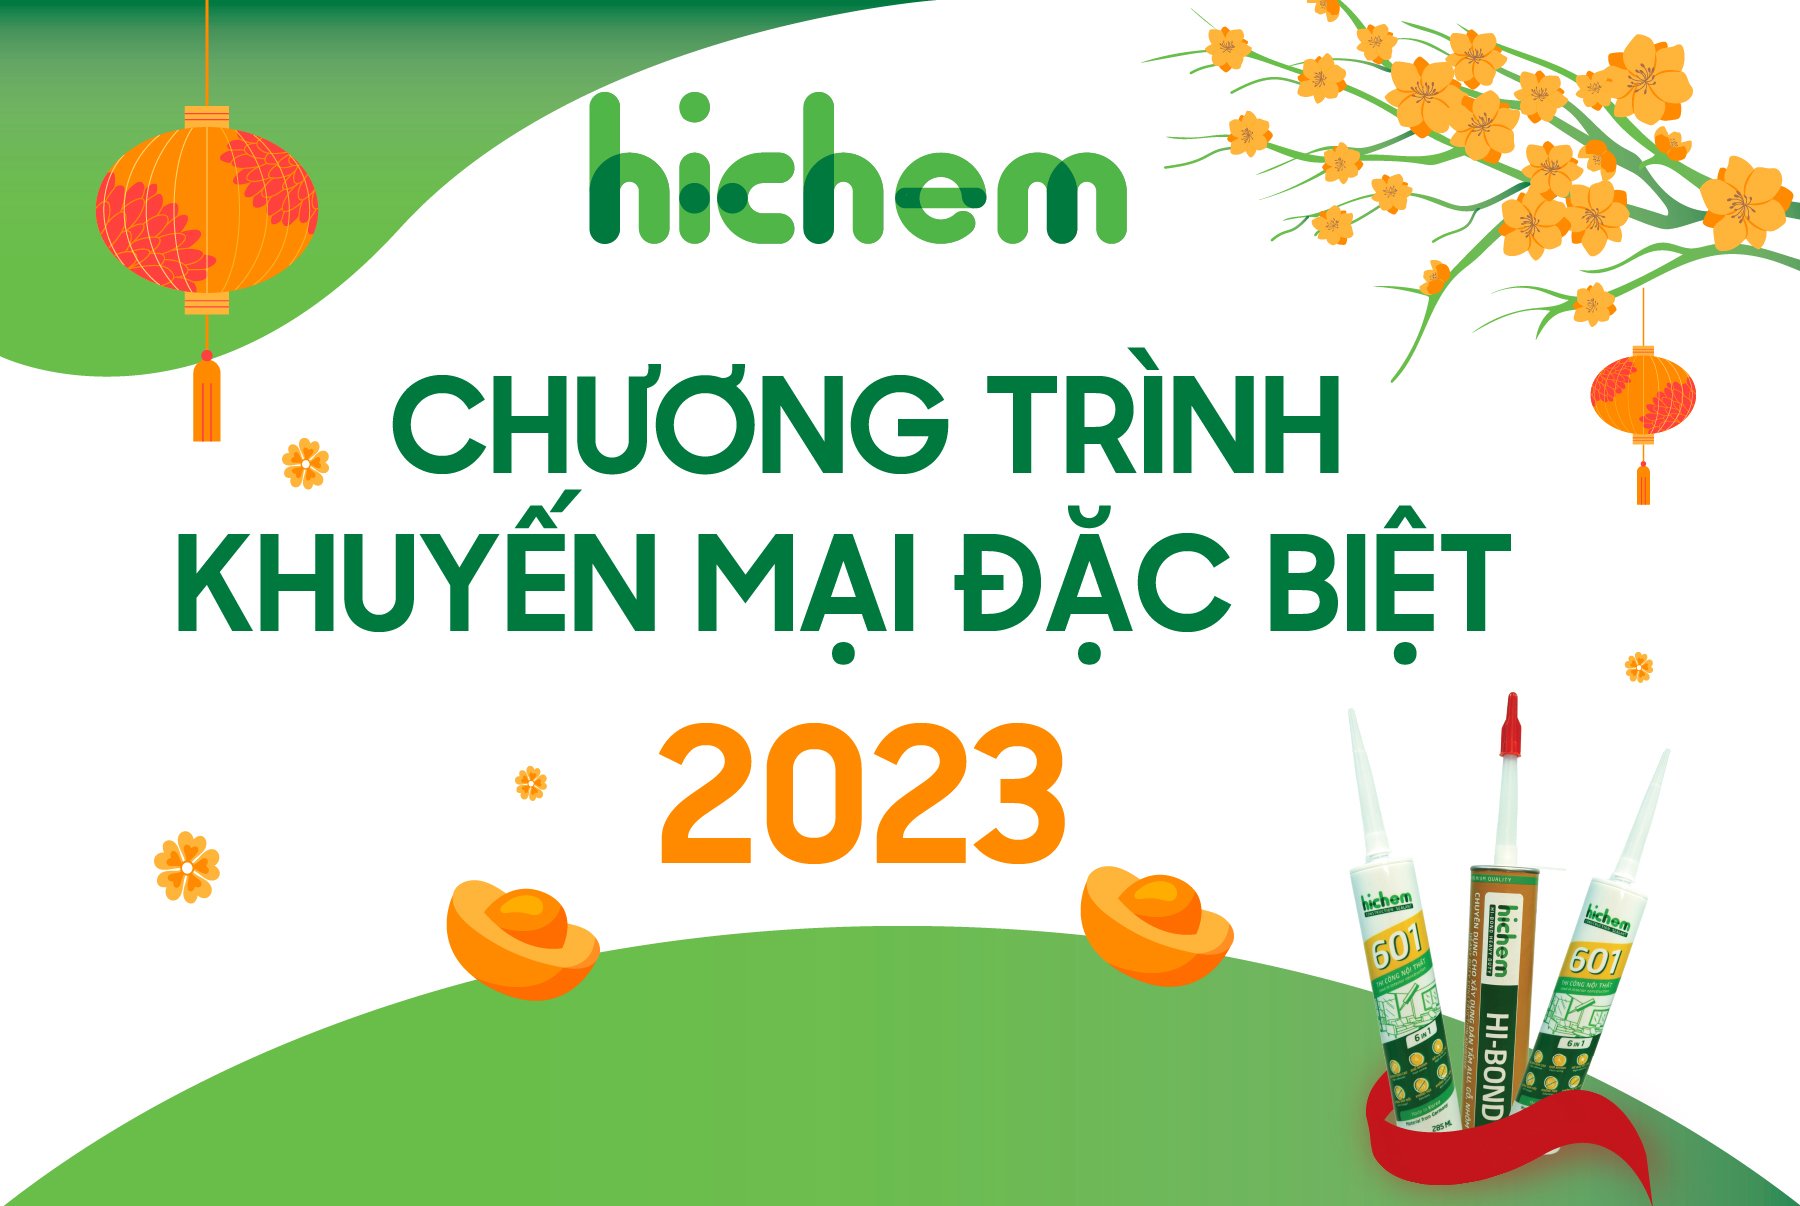 Mua keo silicon ở Đà Nẵng không thể bỏ qua Công ty Hichem